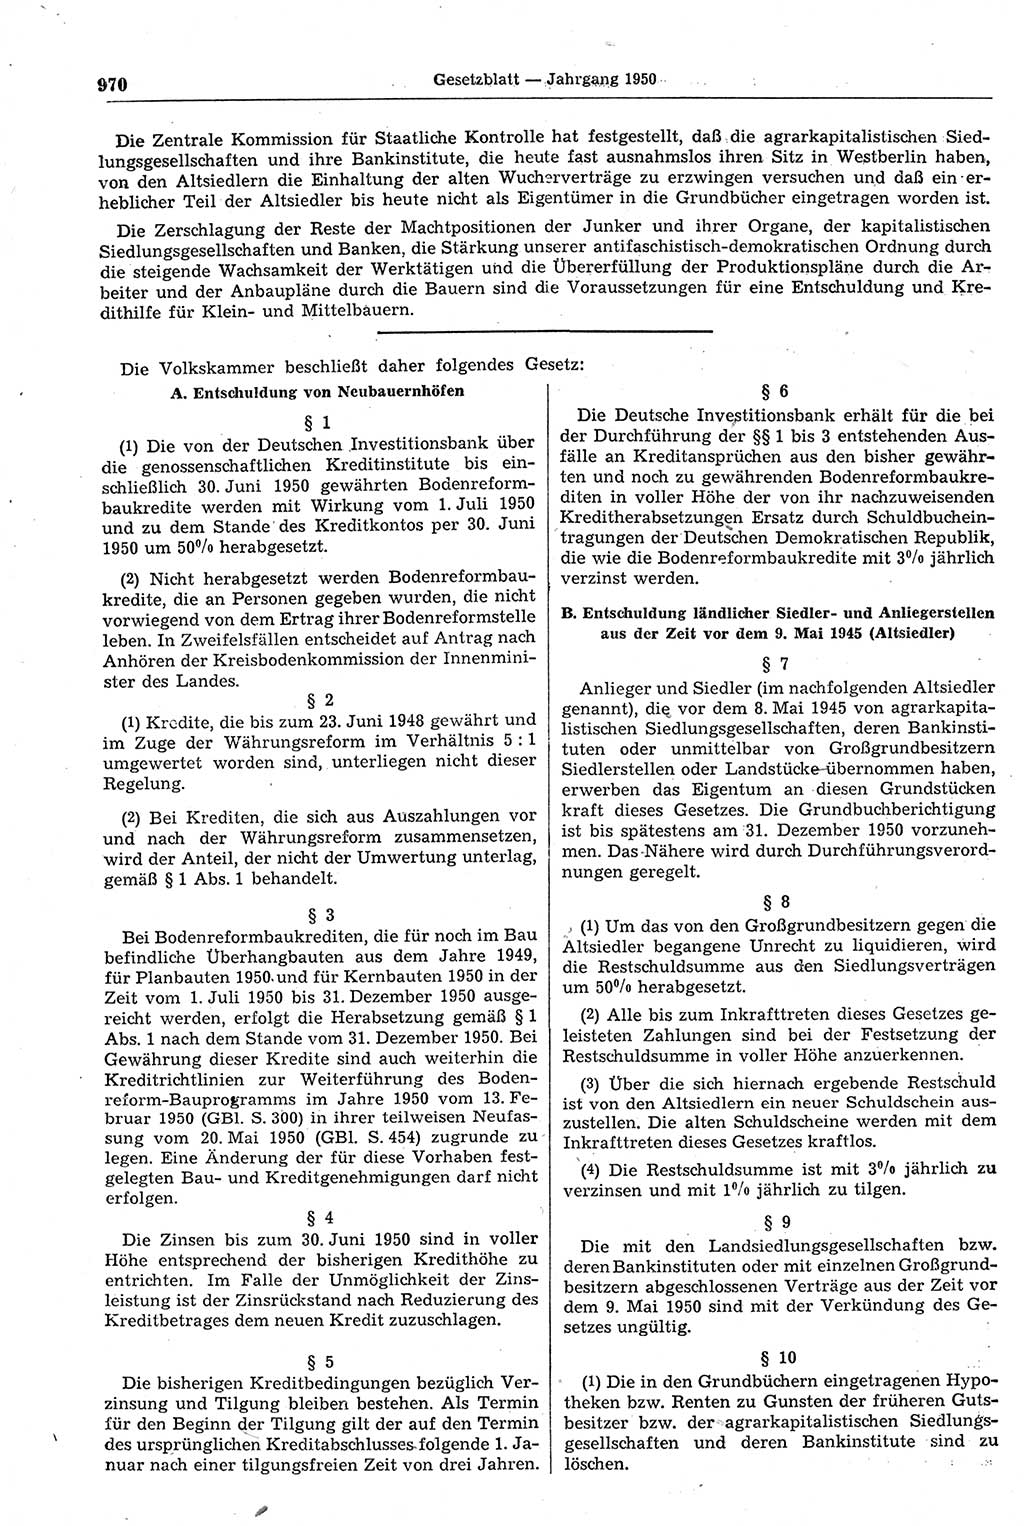 Gesetzblatt (GBl.) der Deutschen Demokratischen Republik (DDR) 1950, Seite 970 (GBl. DDR 1950, S. 970)